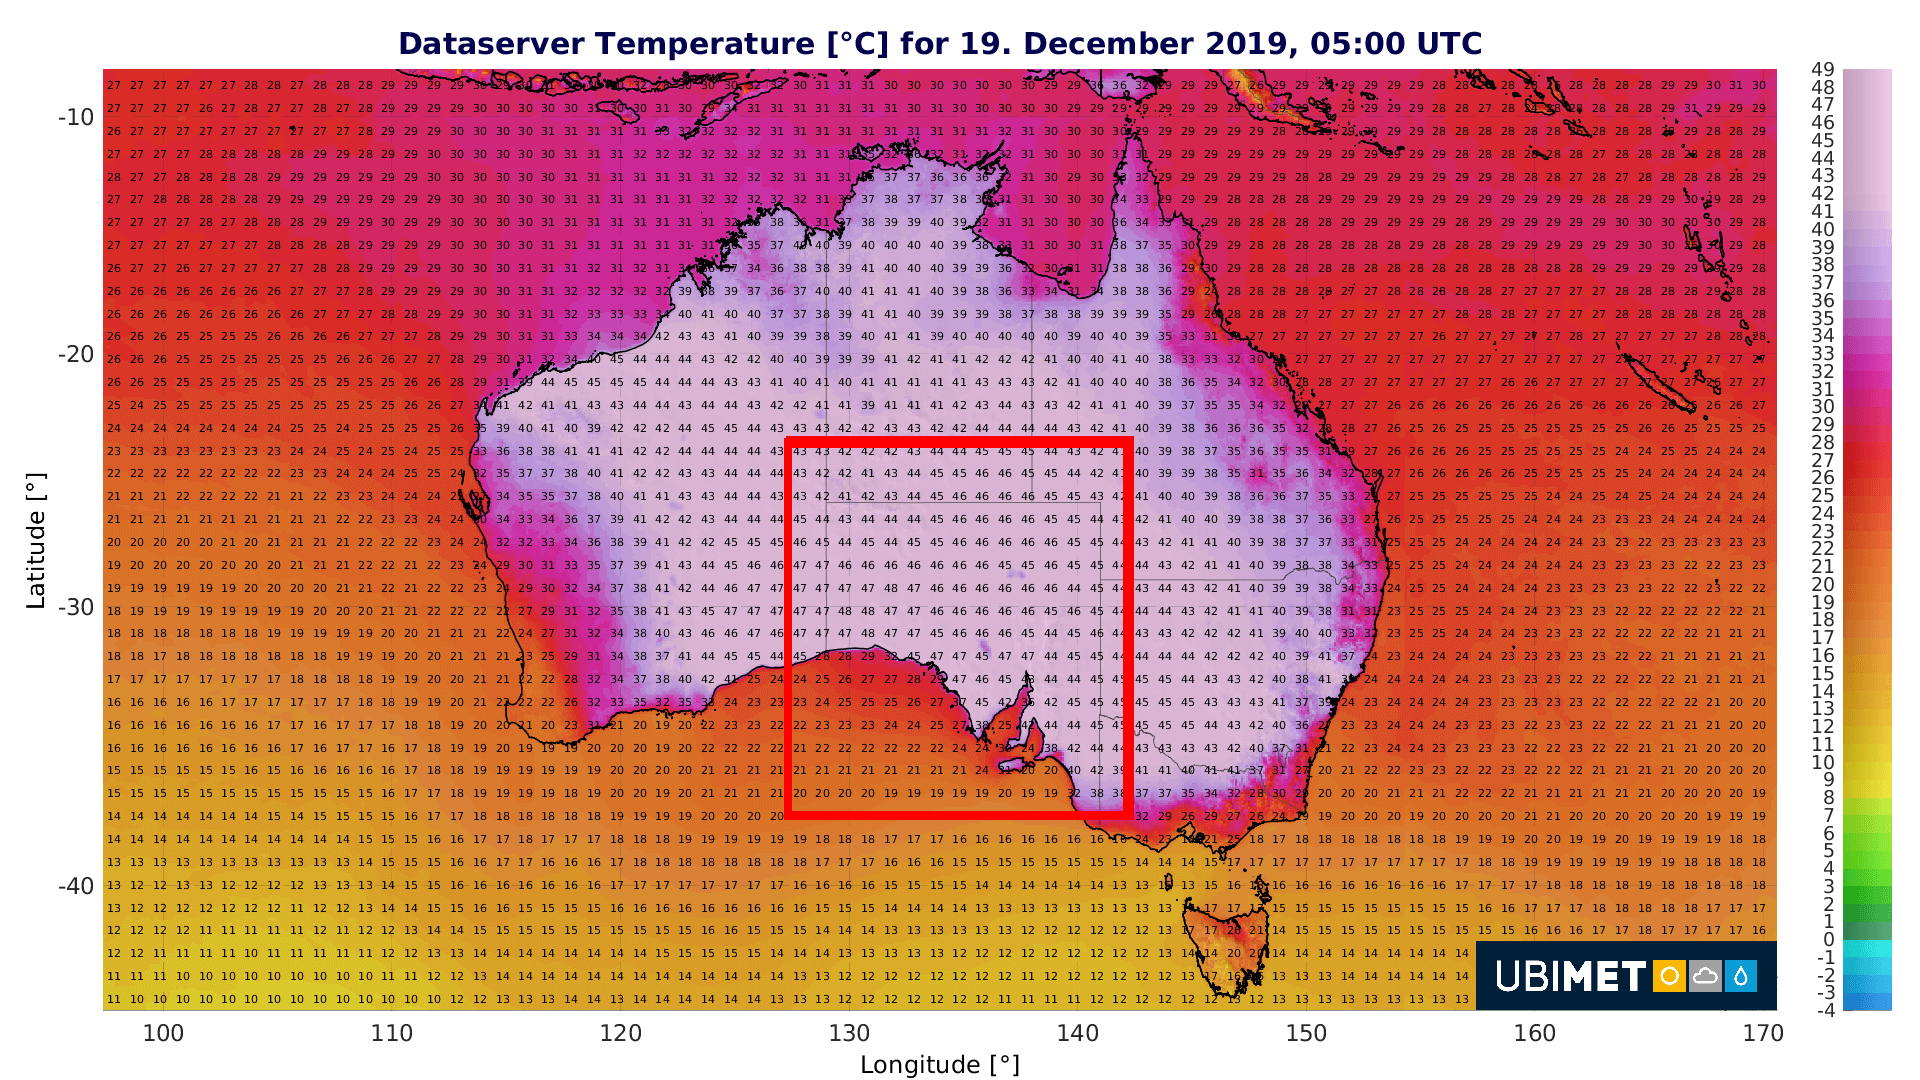 Temperaturvorhersage für Donnerstag, 19. Dezember 2019, 5:00 UTC. Quelle: UBIMET